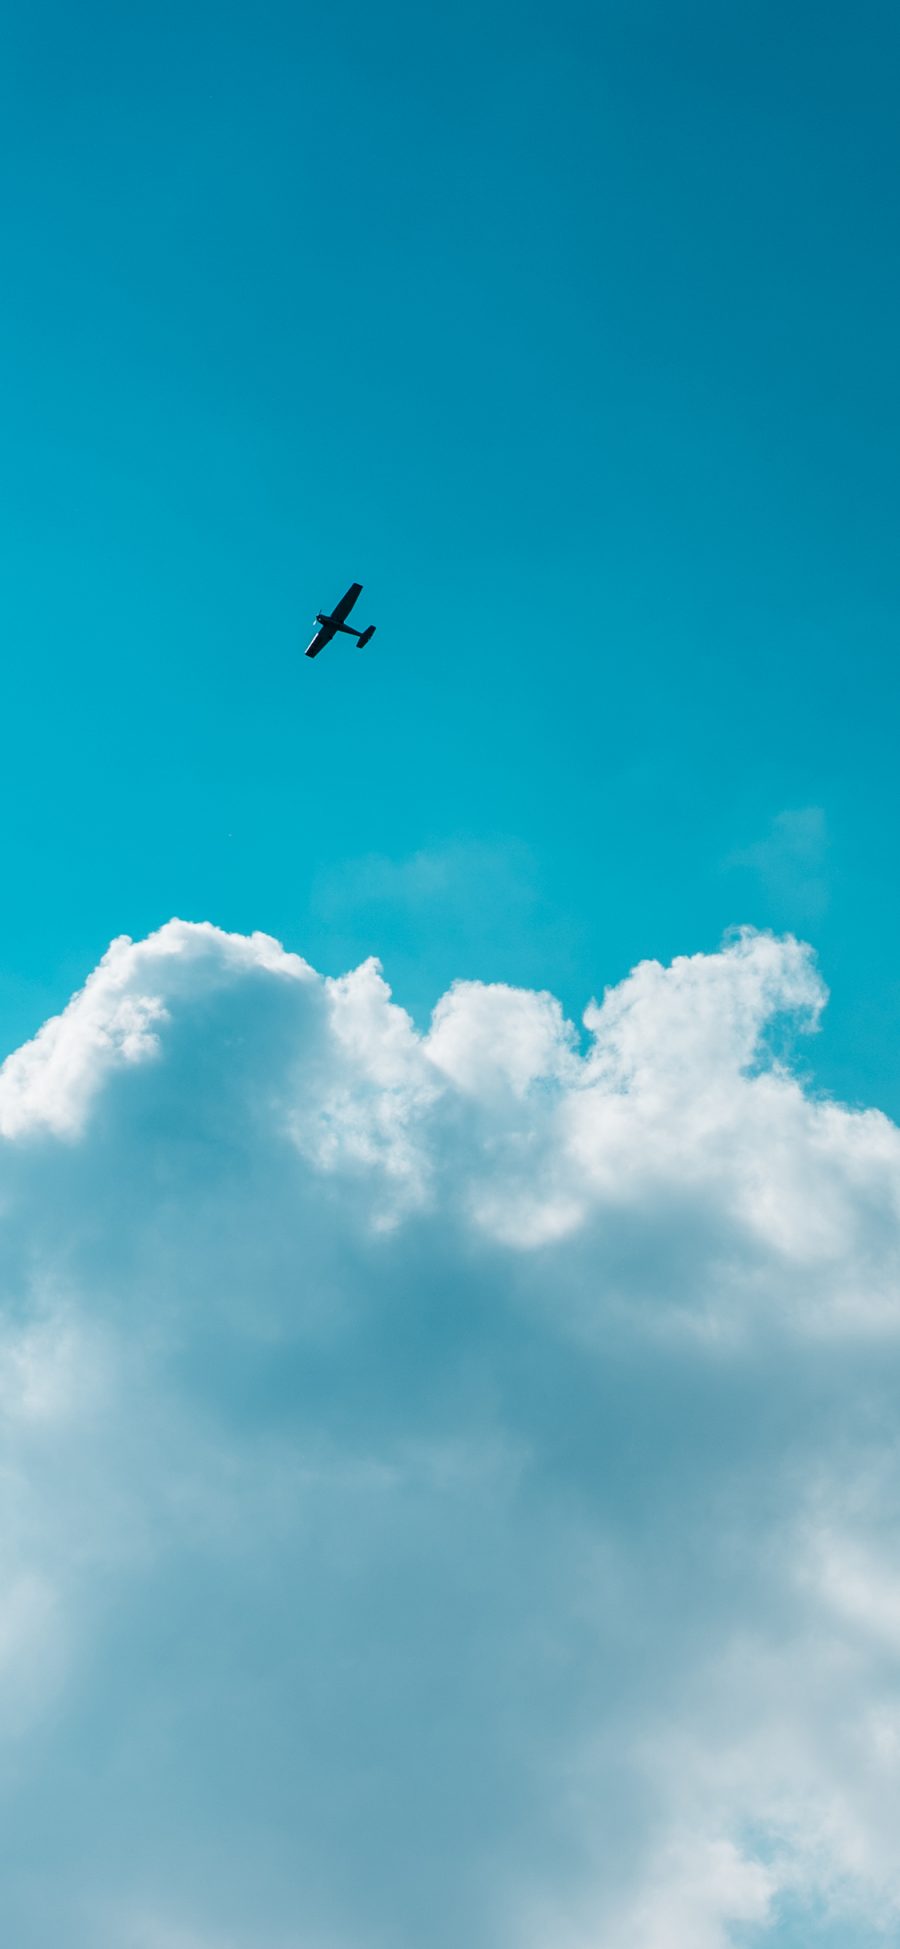 [2436×1125]飞机 蓝天白云 太空 飞行 苹果手机壁纸图片